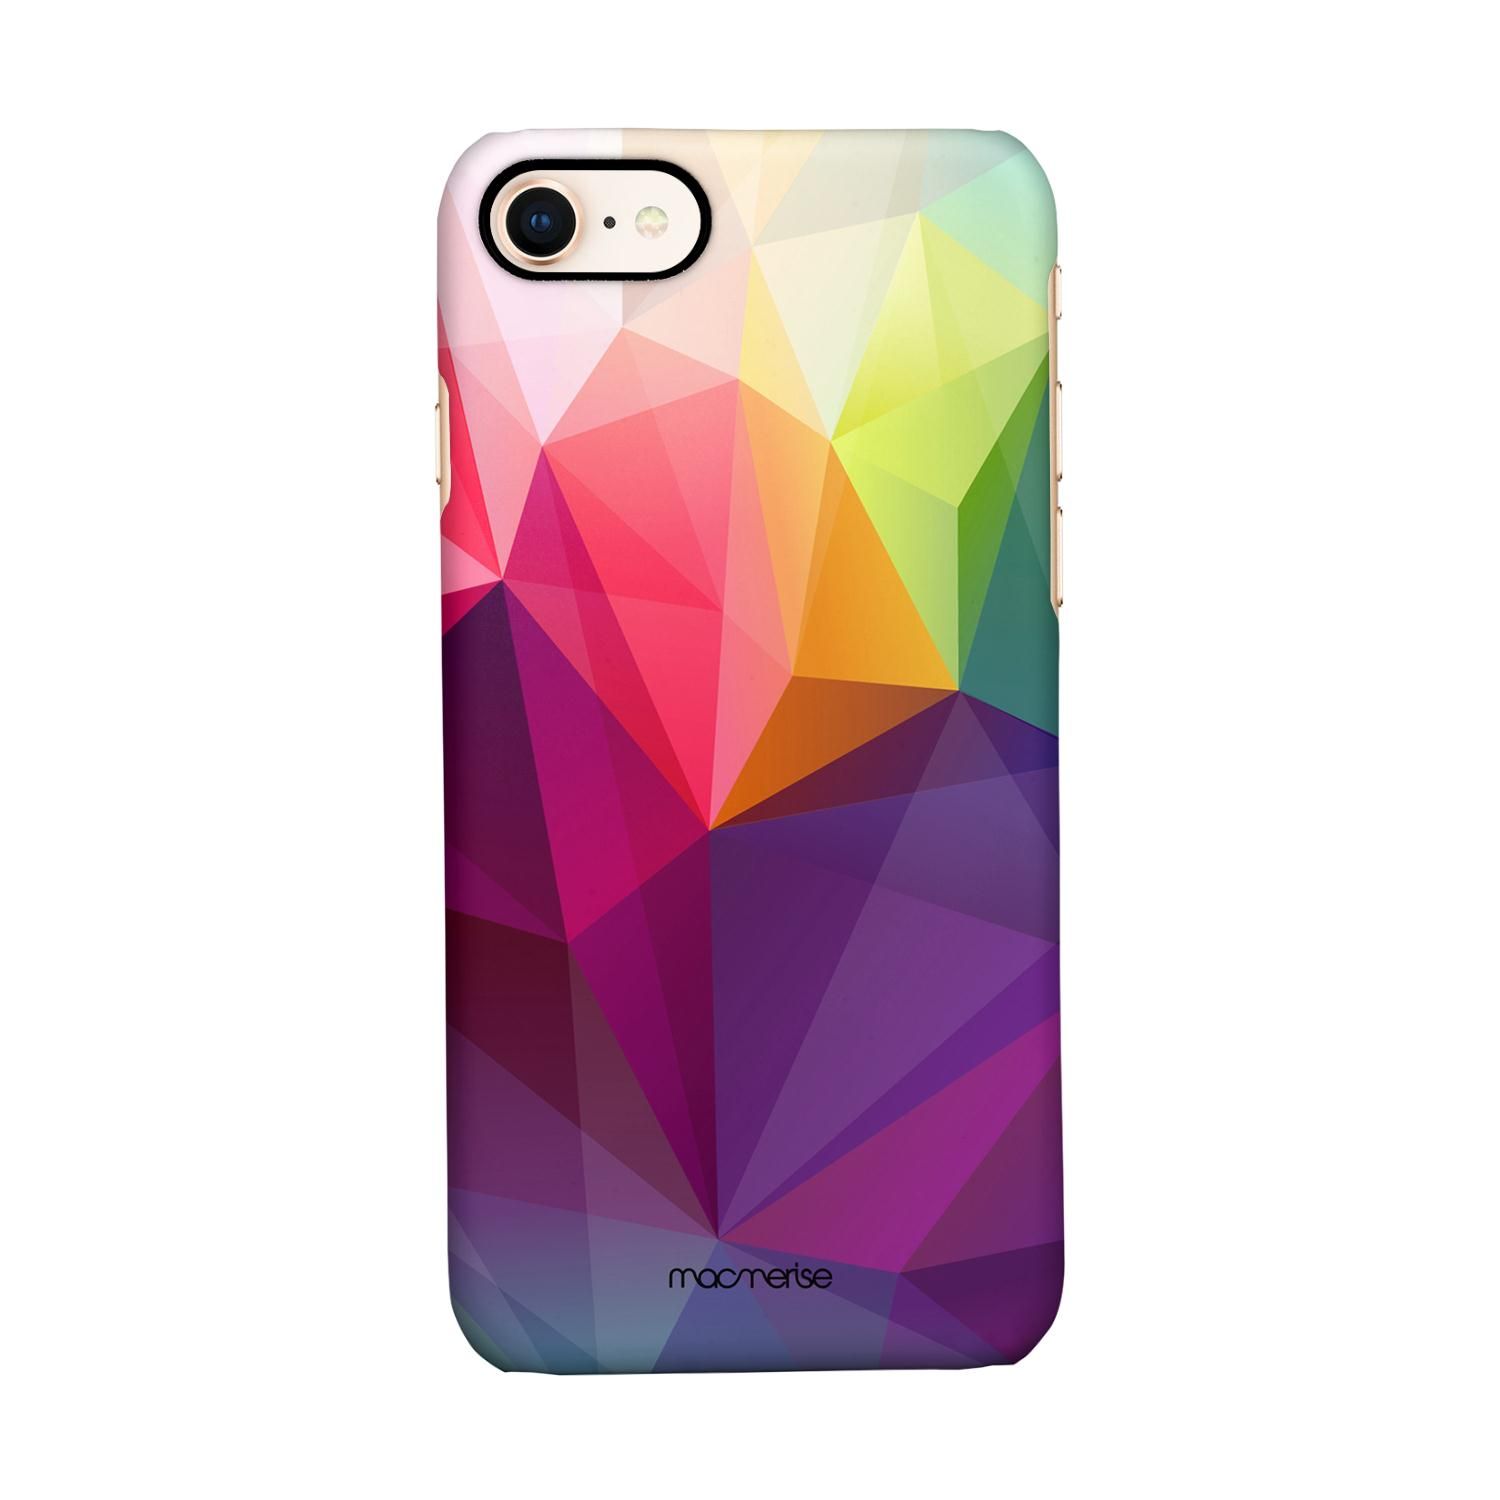 Buy Crystal Art - Sleek Phone Case for iPhone 8 Online